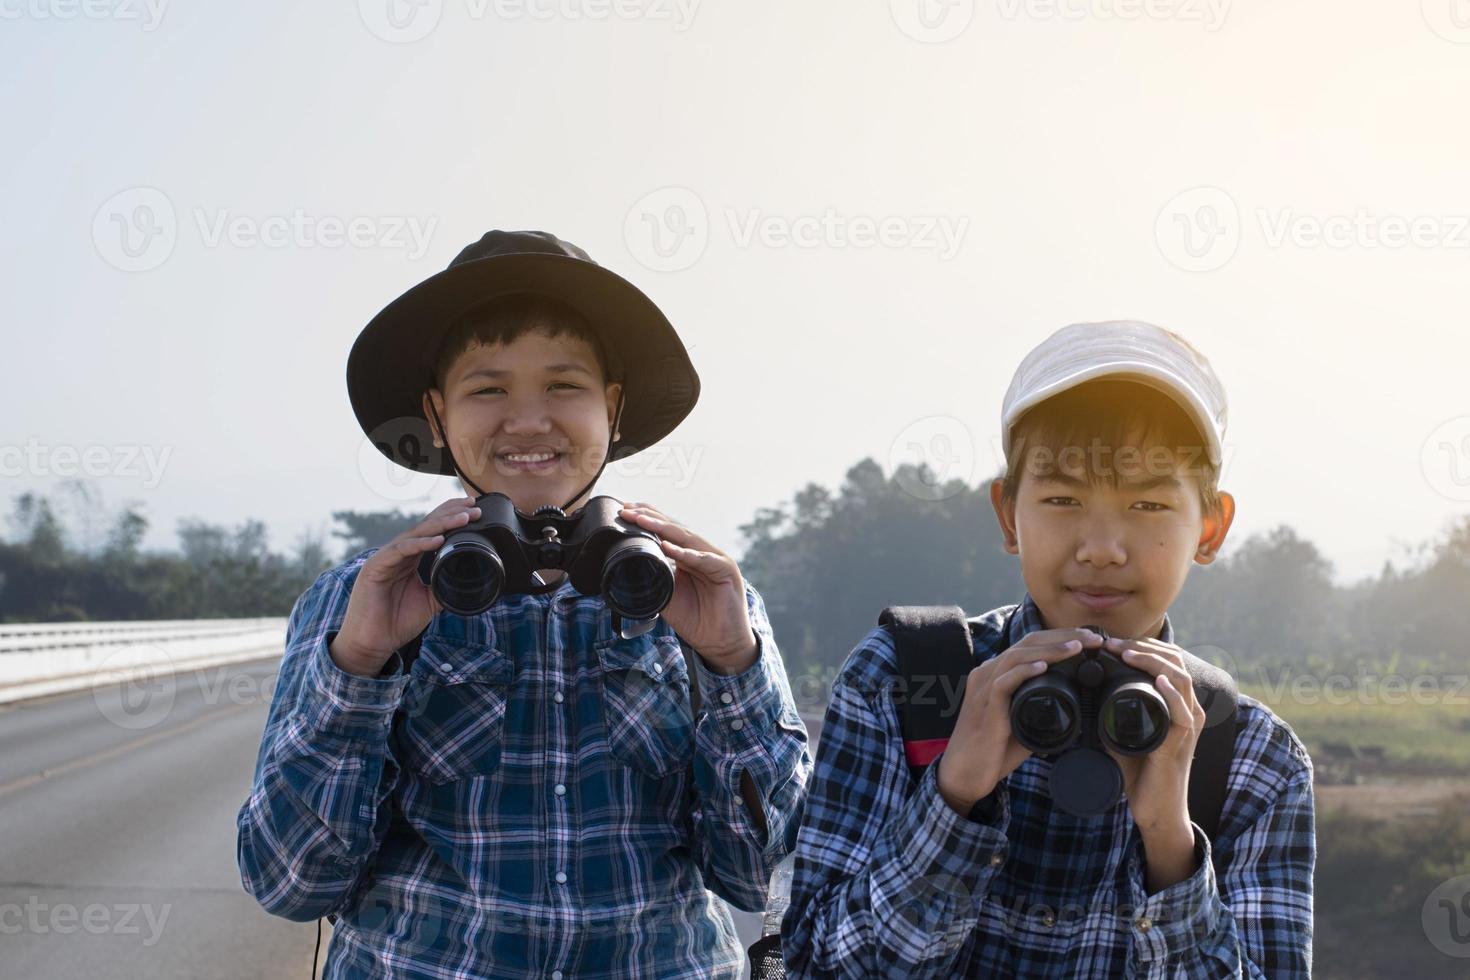 asiatische Jungs benutzen Ferngläser, um während des Sommercamps Vögel im tropischen Wald zu beobachten, eine Idee, um Kreaturen und wild lebende Tiere und Insekten außerhalb des Klassenzimmers zu lernen. foto